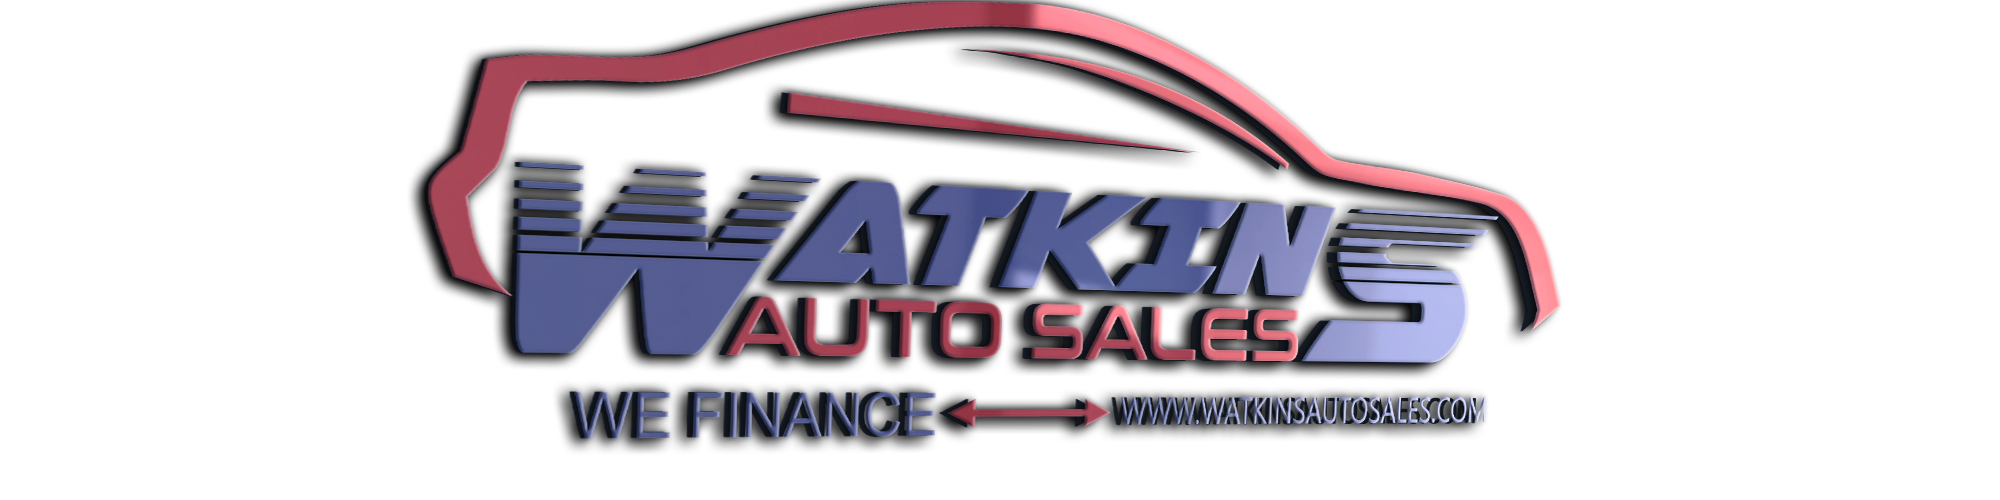 Watkins Auto Sales Logo